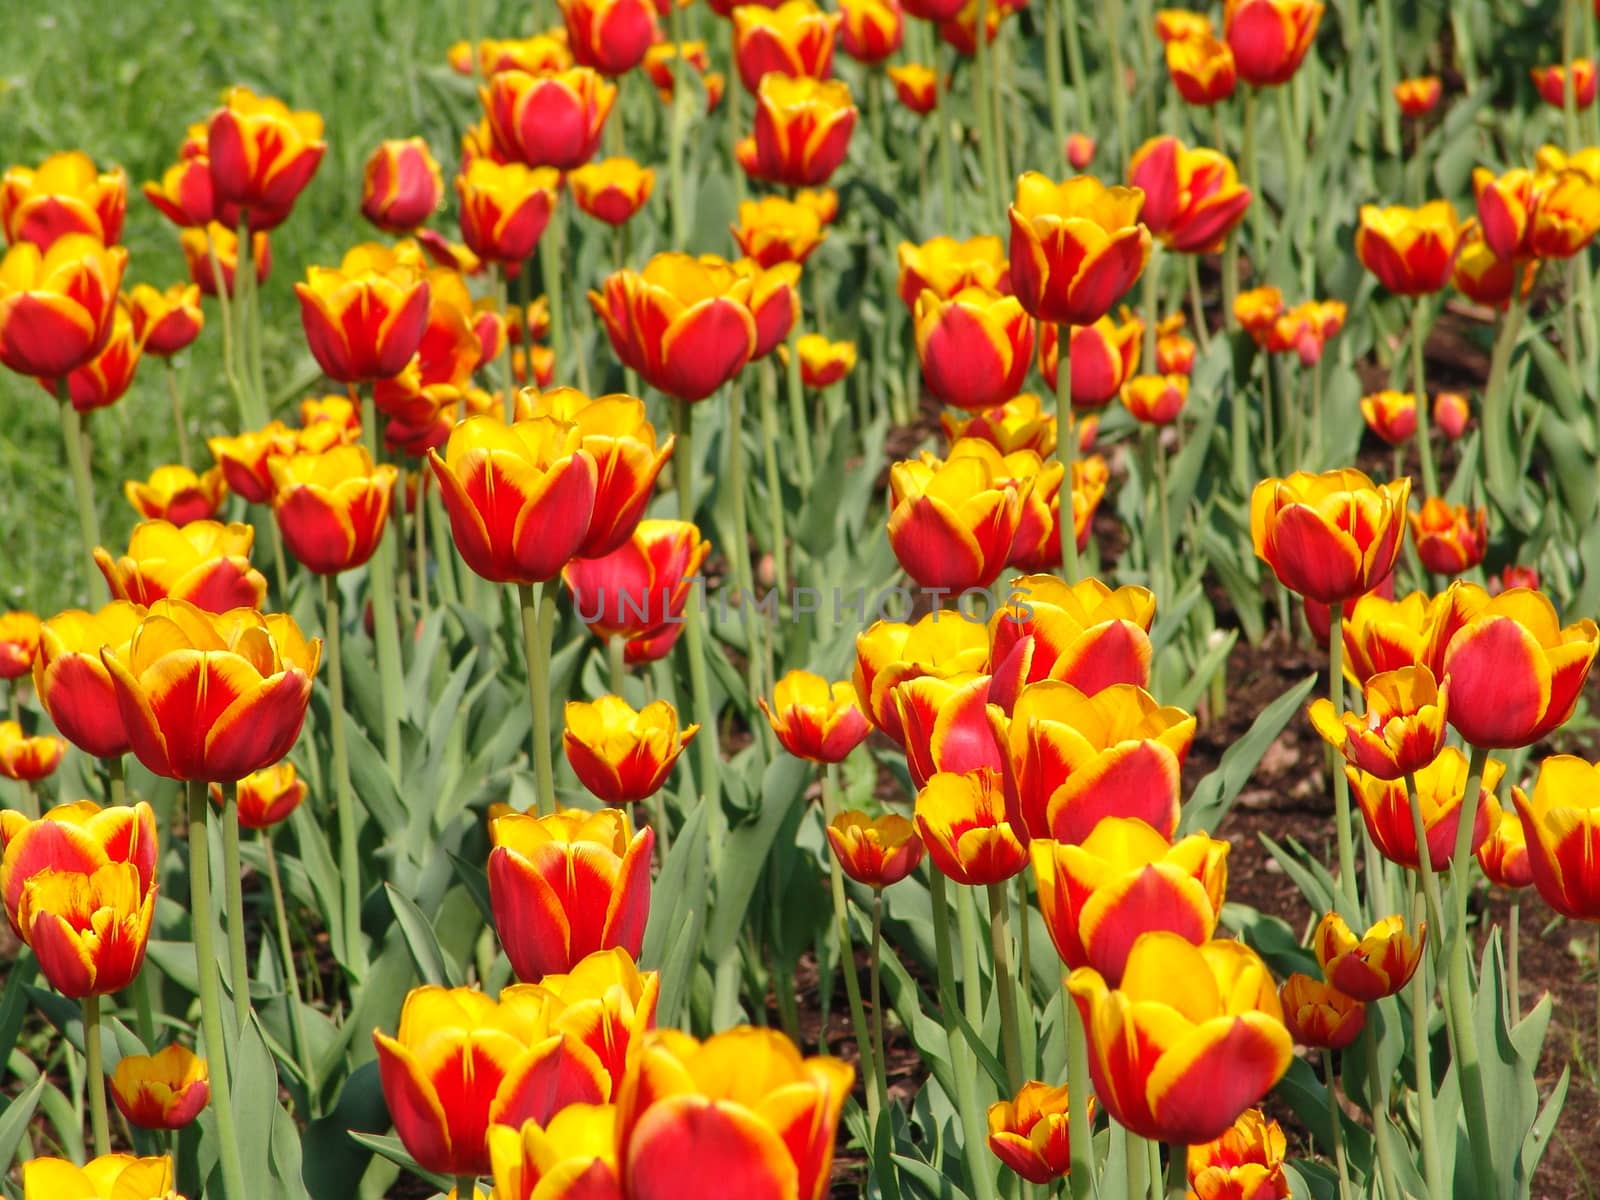 Field of tulips by elena_vz